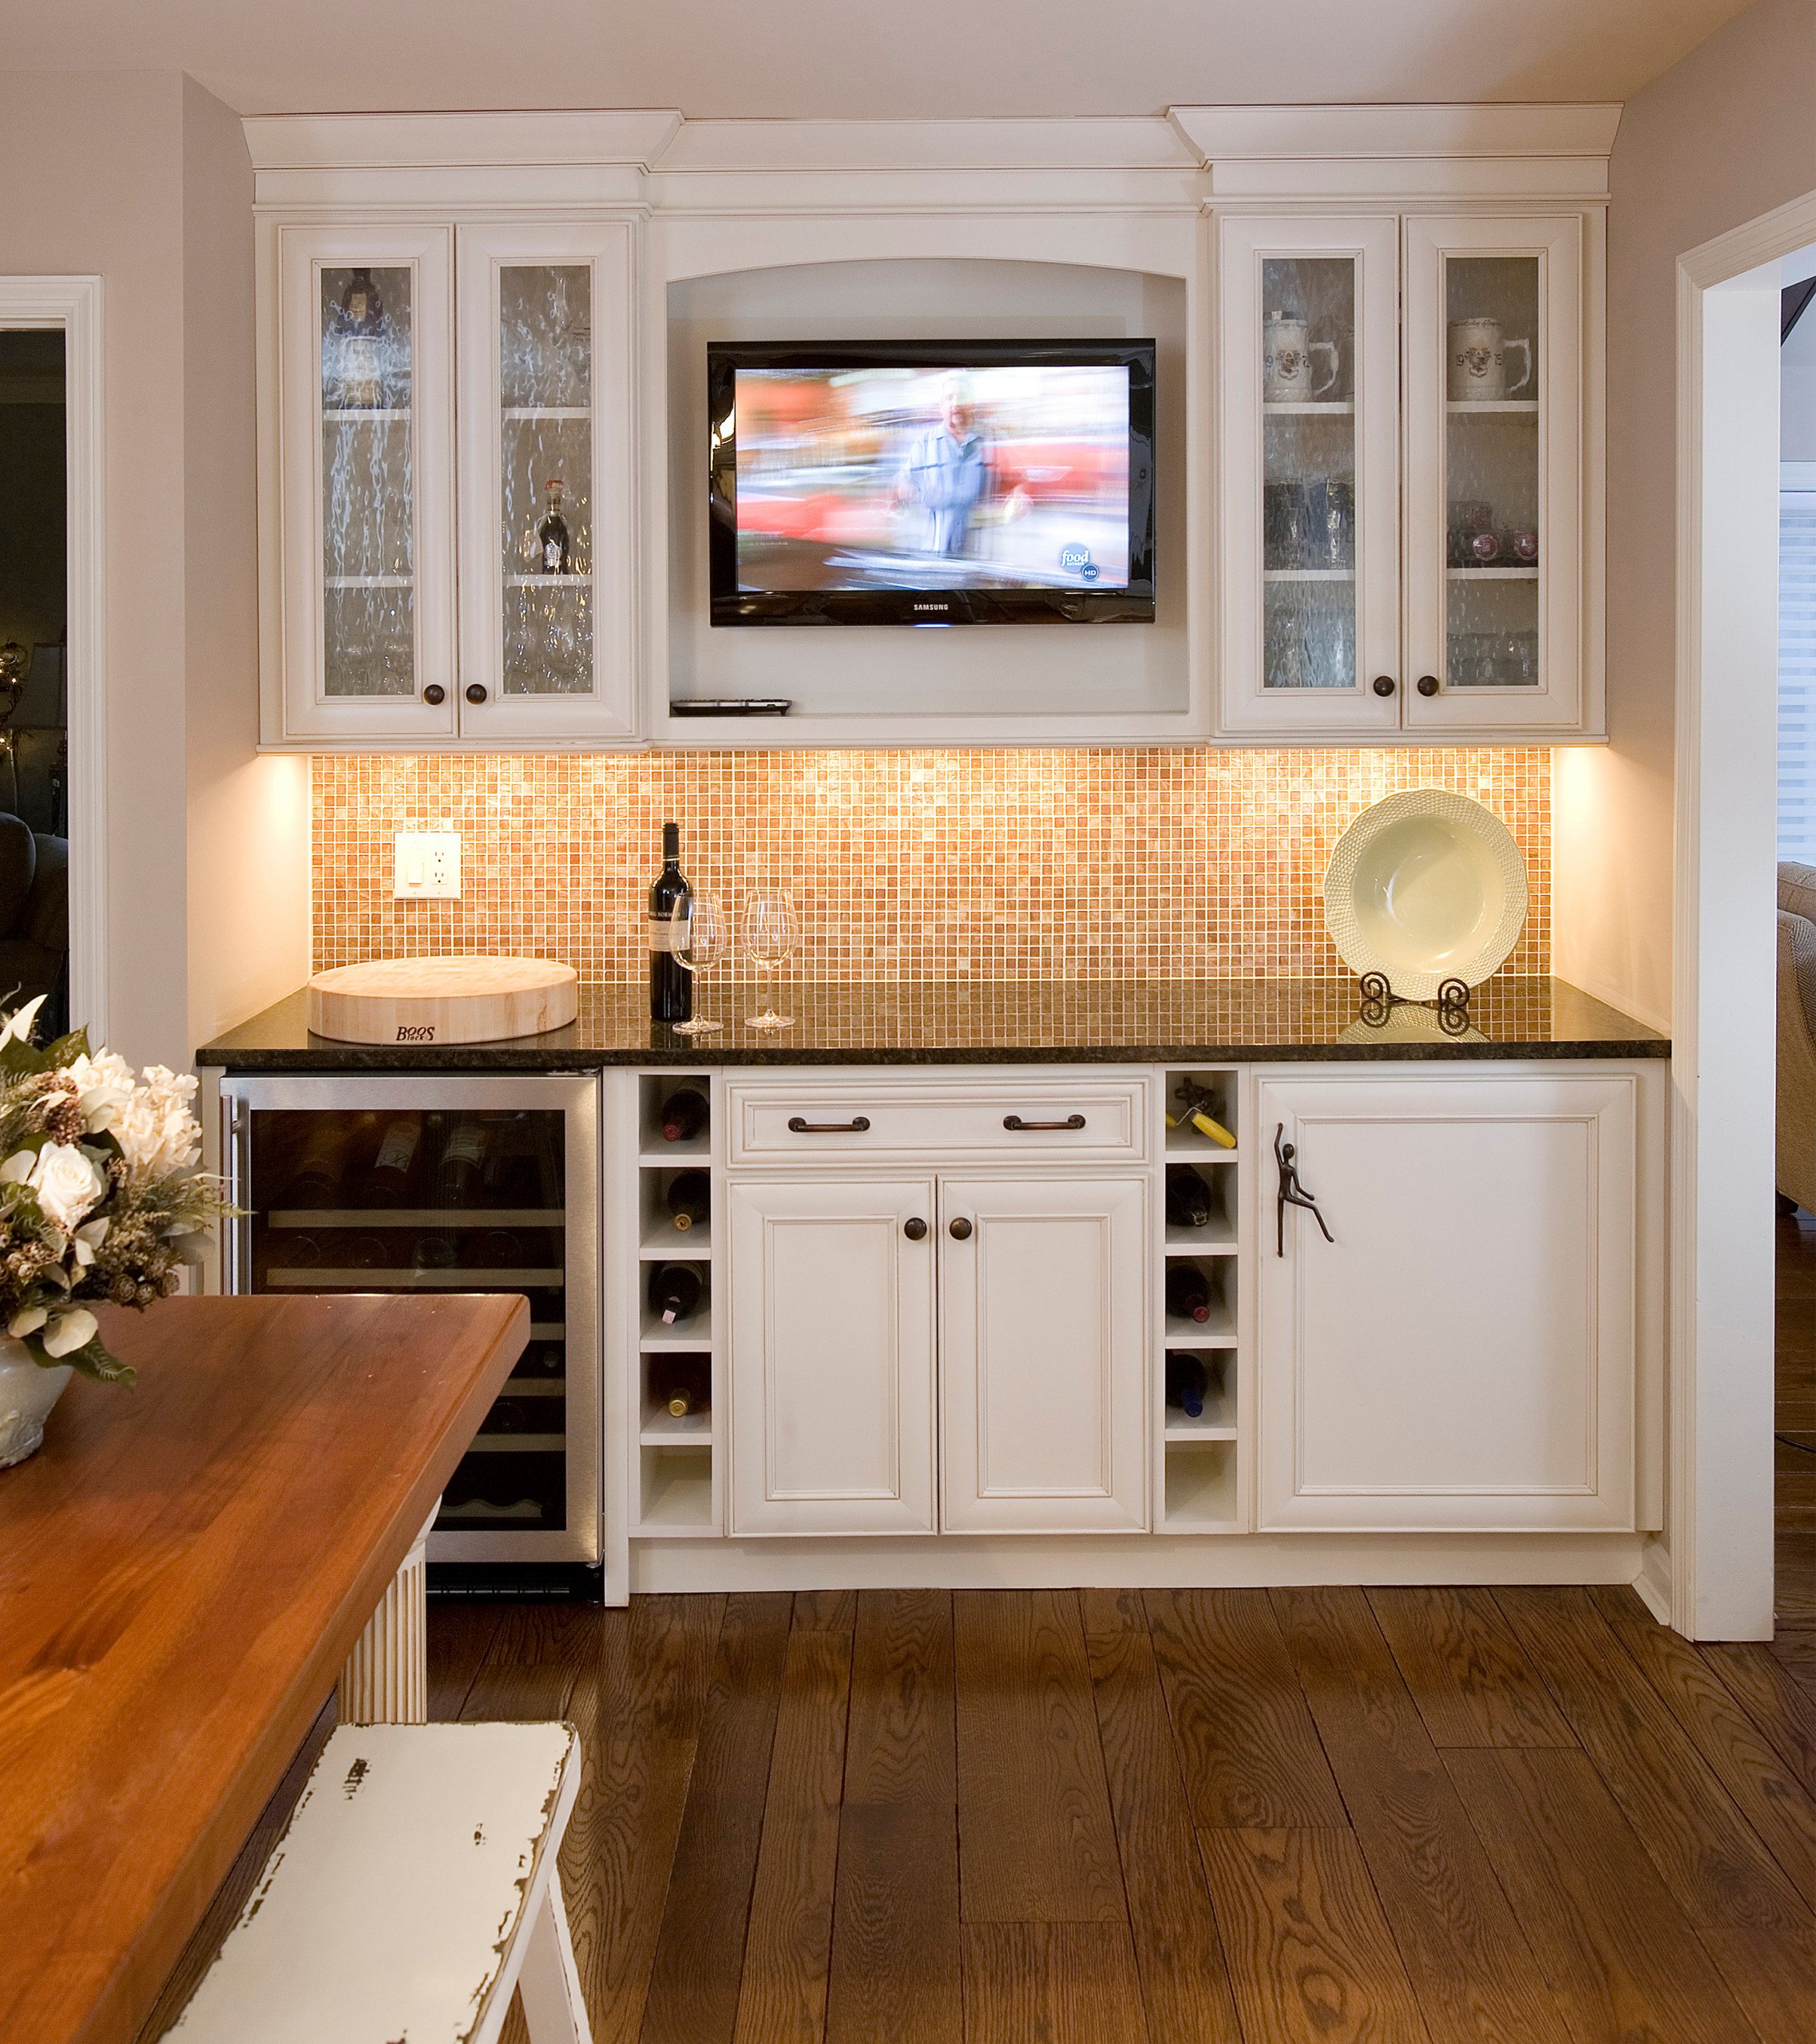 Встроенные кухонные телевизоры. Встраиваемый телевизор для кухни. Телевизор в кухонной мебели. Телевизор встроенный в кухню. Кухонный гарнитур с телевизором.